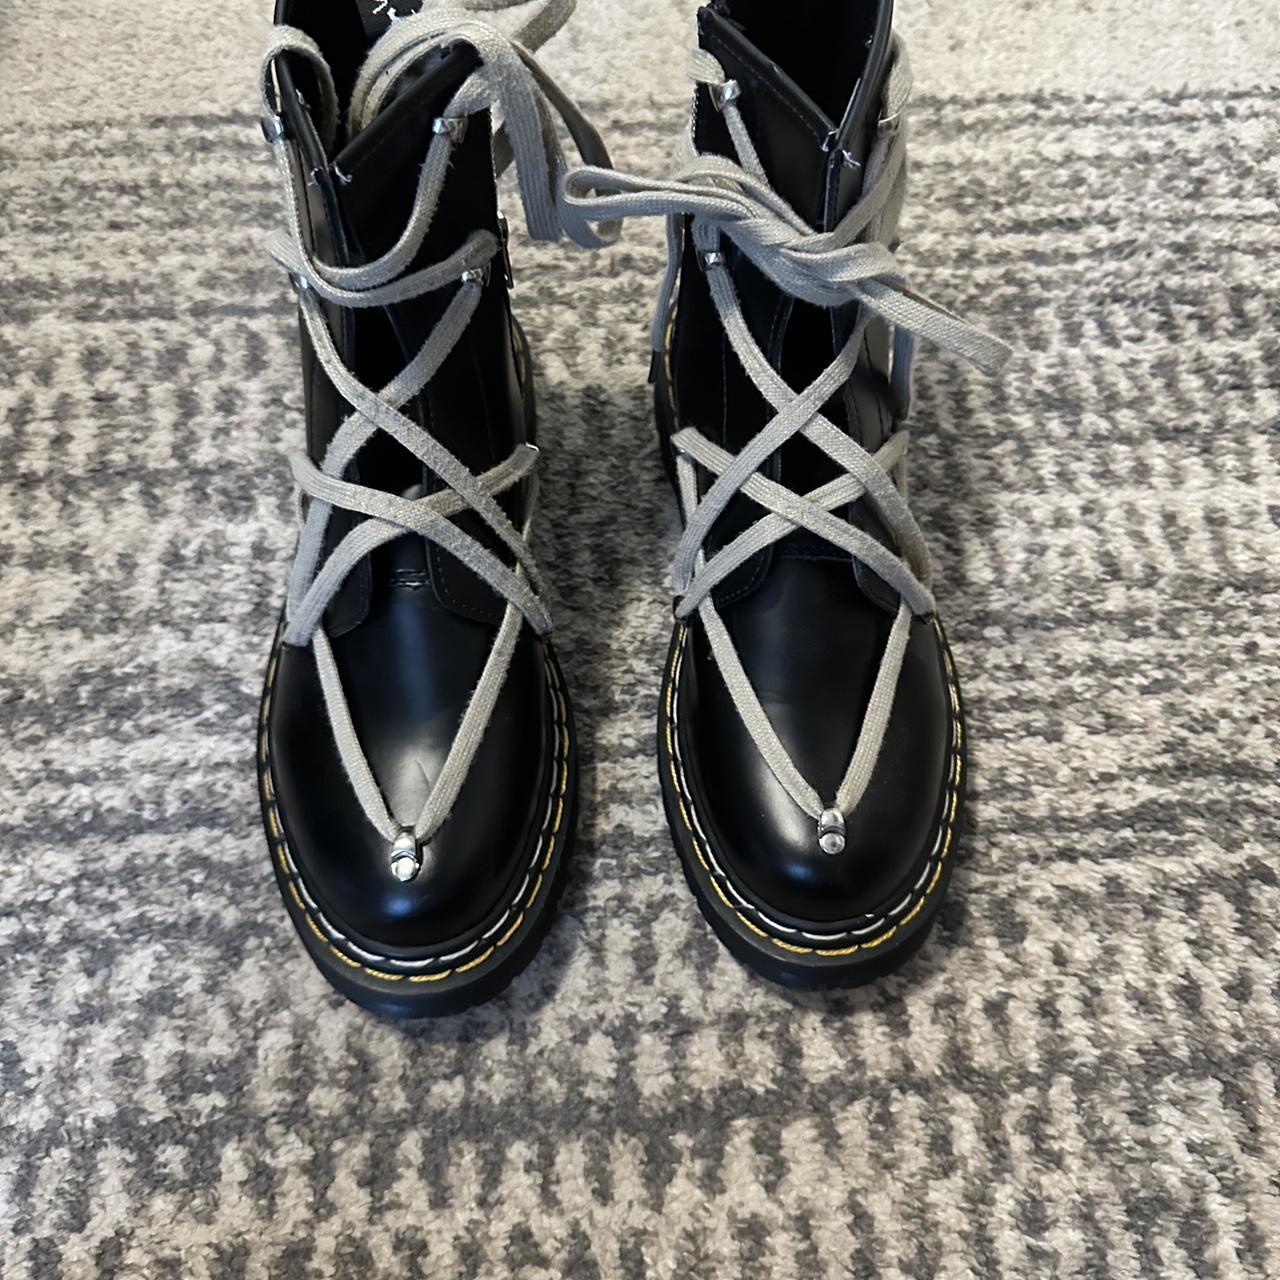 Rick Owen dr materns boots rep size 44 (11) - Depop